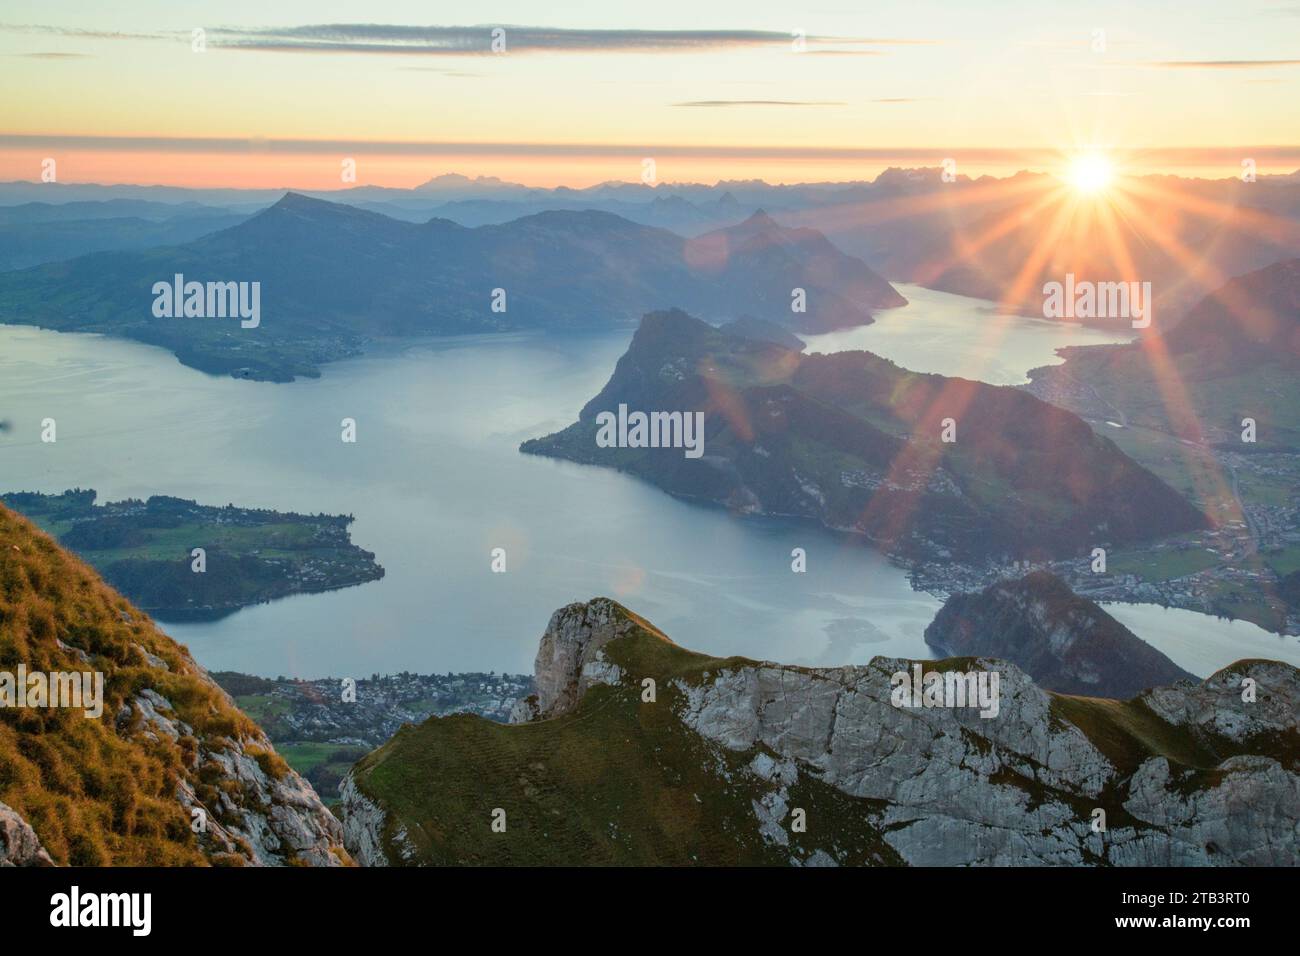 Switzerland, Lucerne, Pilatus, sunrise with lake Lucerne Stock Photo